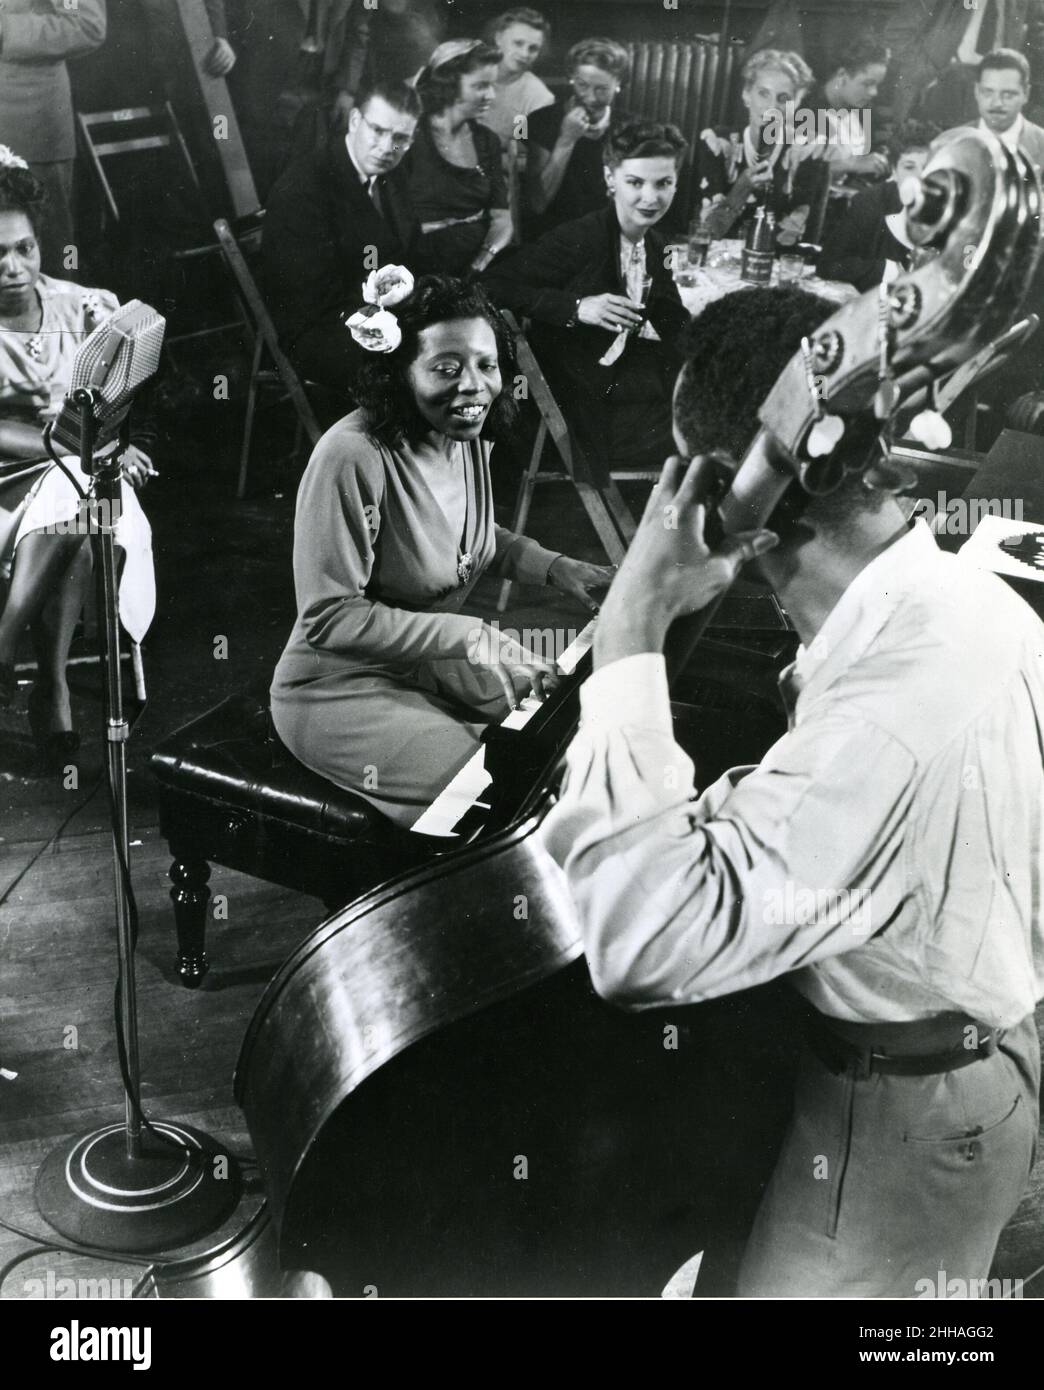 New York, vers 1945 - Mary Lou Williams joue une sélection boogie-woogie au Cafe Society Downtown, un club intégré.Mlle Williams organise des arrangements pour le groupe Duke Ellington. Banque D'Images